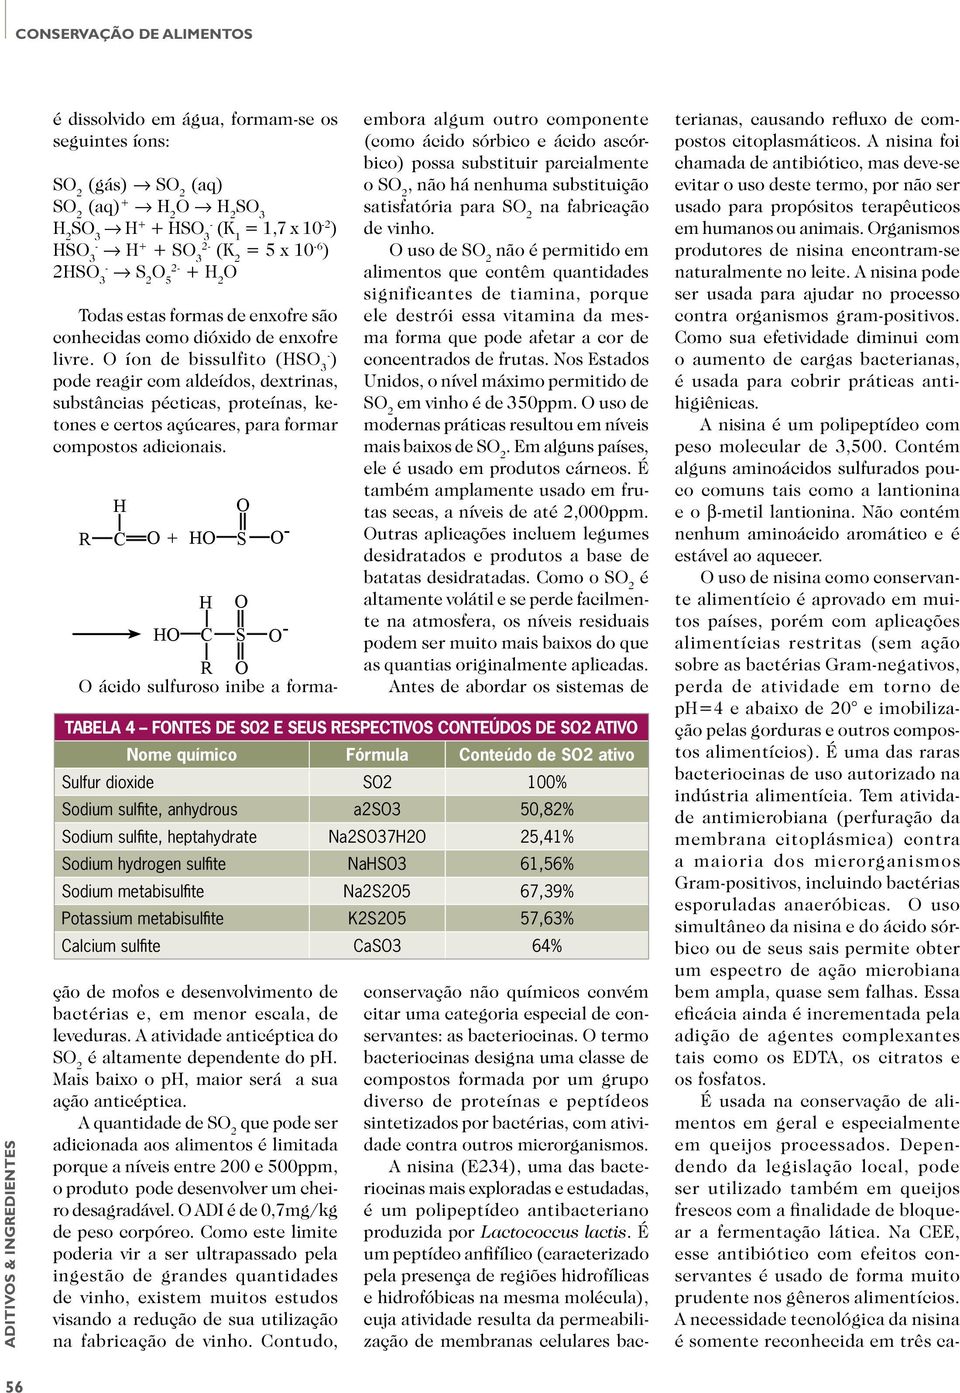 O íon de bissulfito (HSO 3- ) pode reagir com aldeídos, dextrinas, substâncias pécticas, proteínas, ketones e certos açúcares, para formar compostos adicionais.